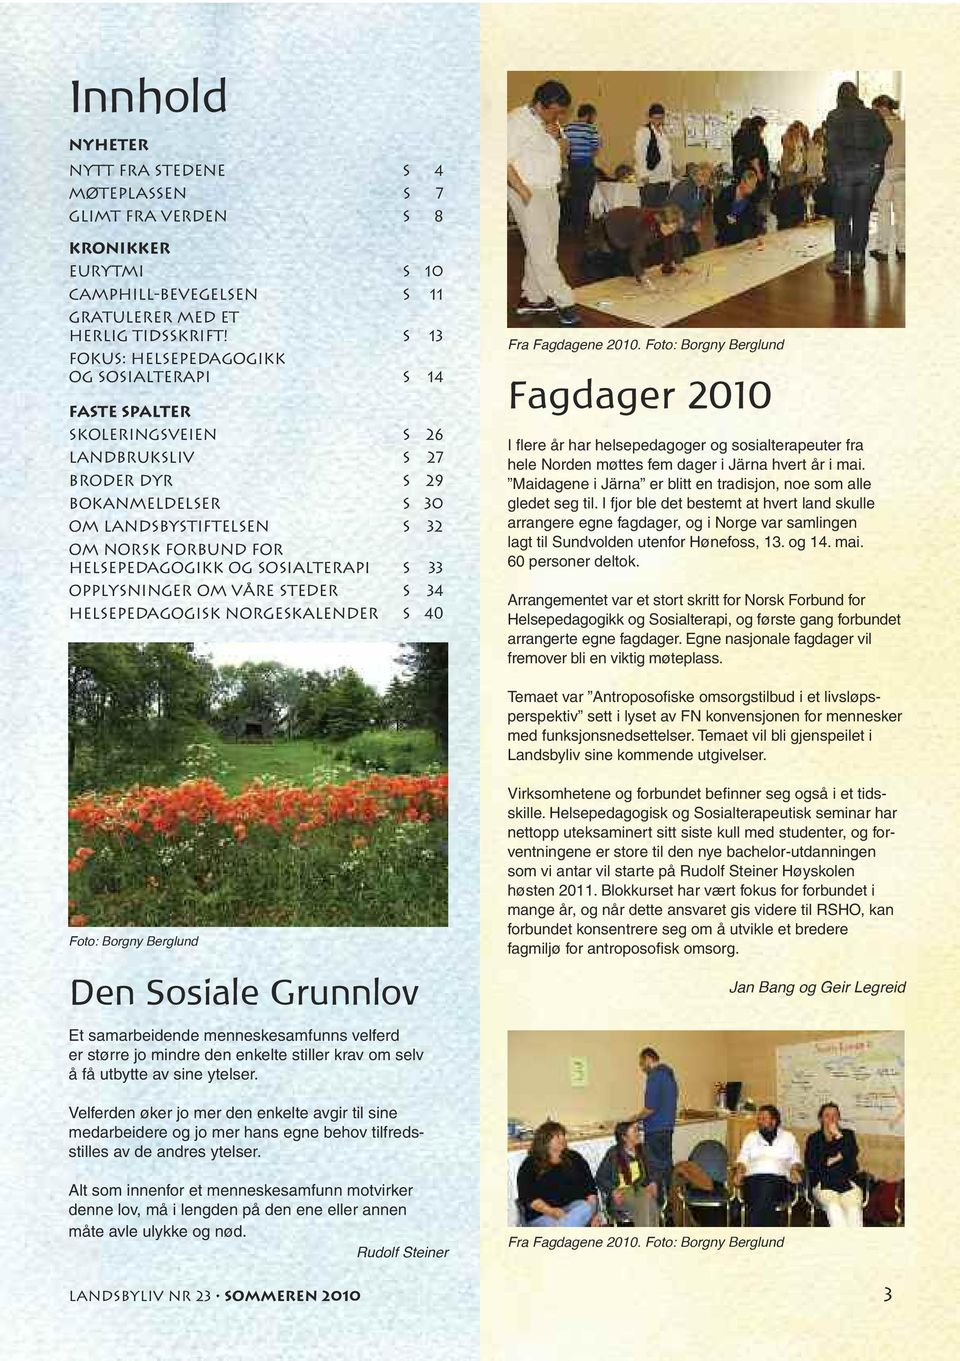 helsepedagogikk og sosialterapi s 33 opplysninger om våre steder s 34 helsepedagogisk norgeskalender s 40 Fra Fagdagene 2010.